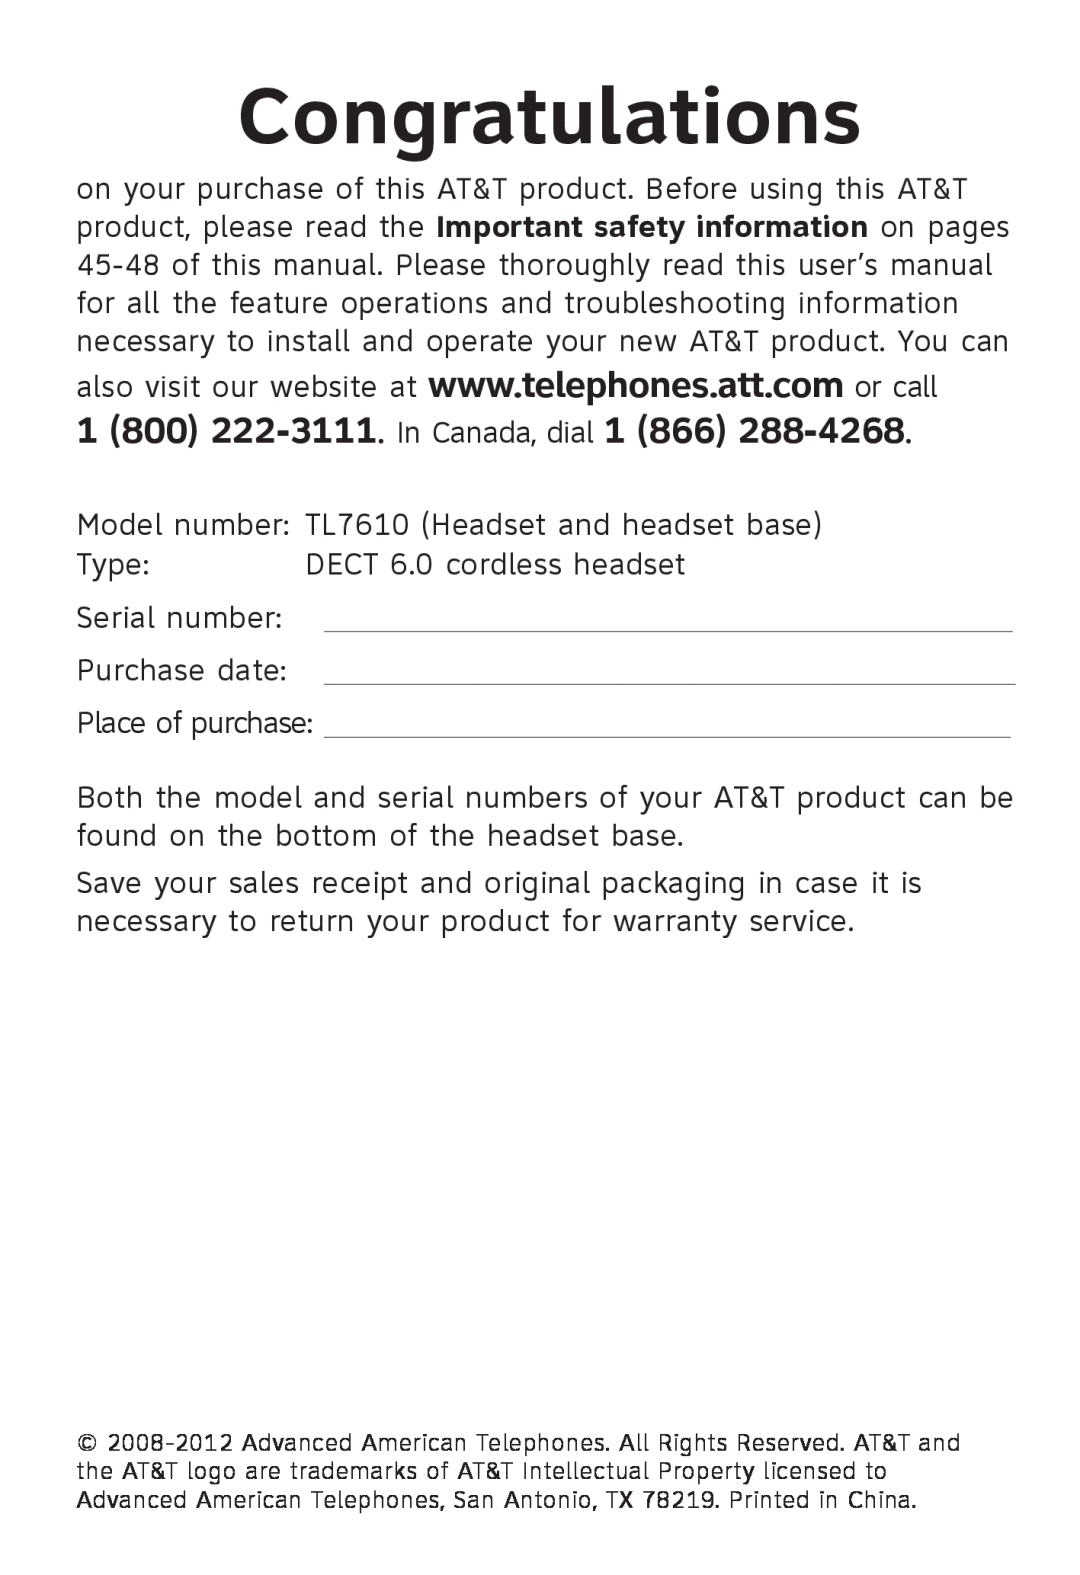 AT&T TL 7610 user manual Congratulations 